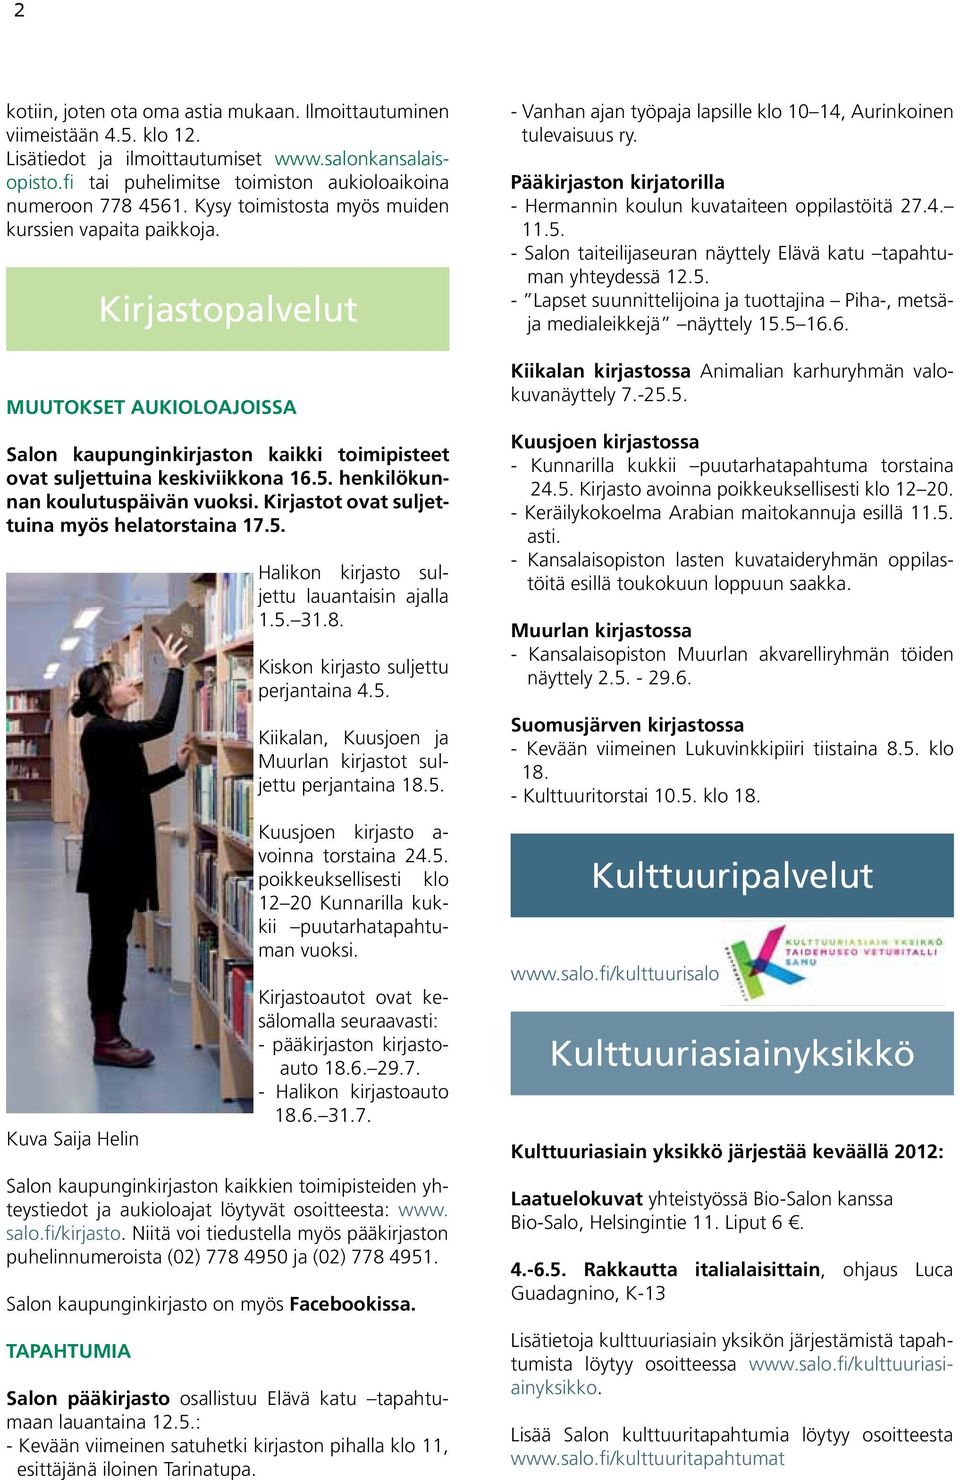 henkilökunnan koulutuspäivän vuoksi. Kirjastot ovat suljettuina myös helatorstaina 17.5. Kuva Saija Helin Halikon kirjasto suljettu lauantaisin ajalla 1.5. 31.8.